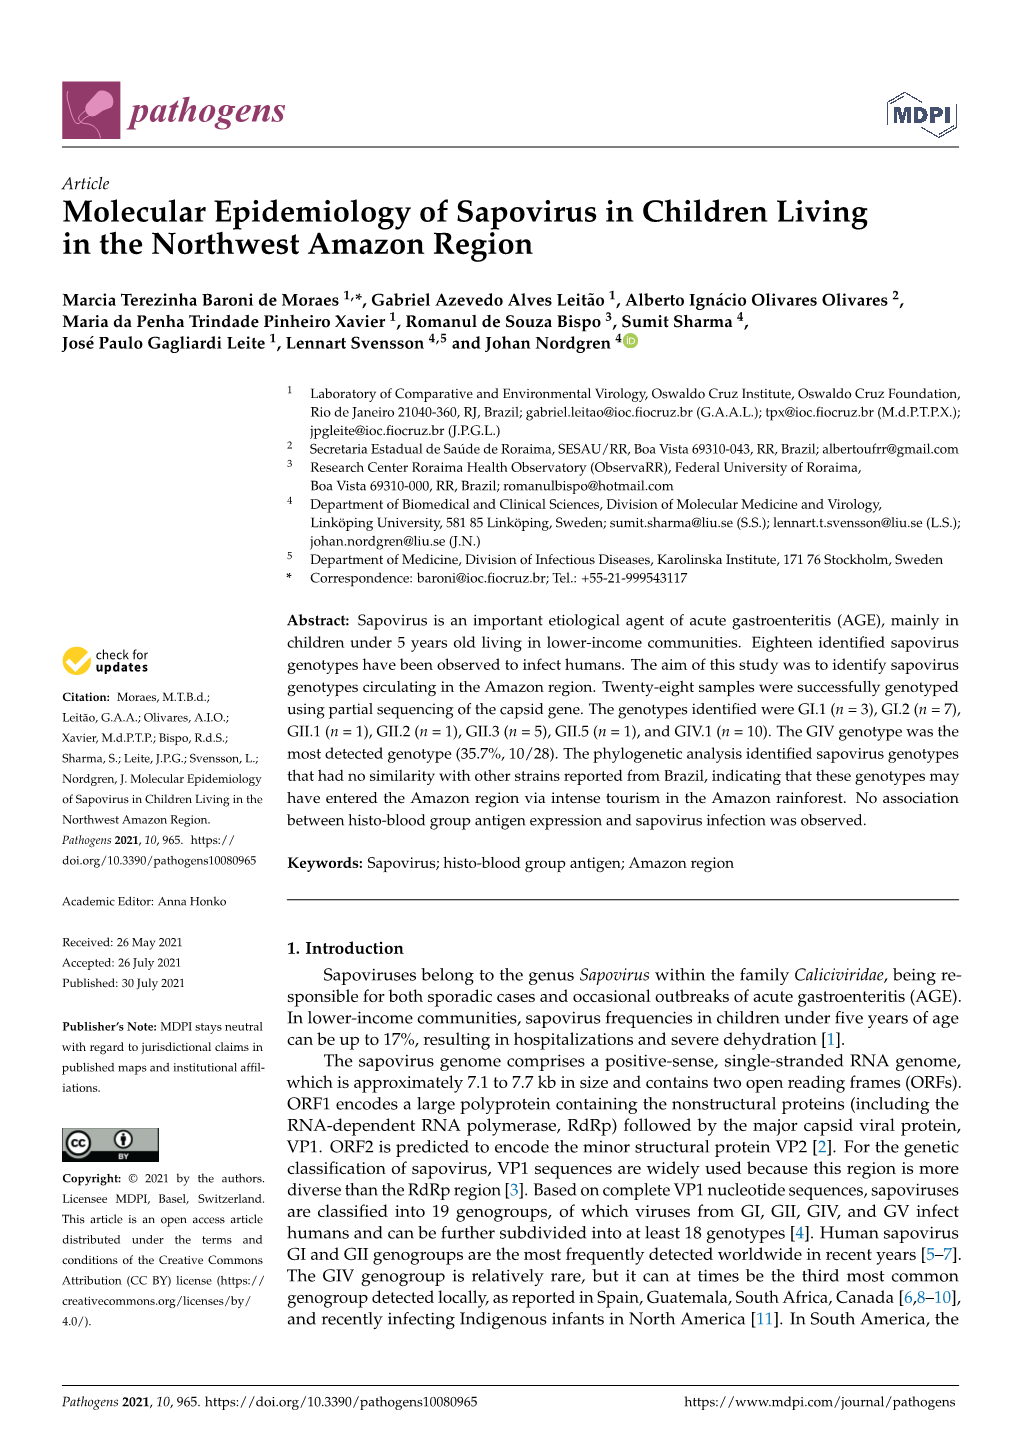 Molecular Epidemiology of Sapovirus in Children Living in the Northwest Amazon Region